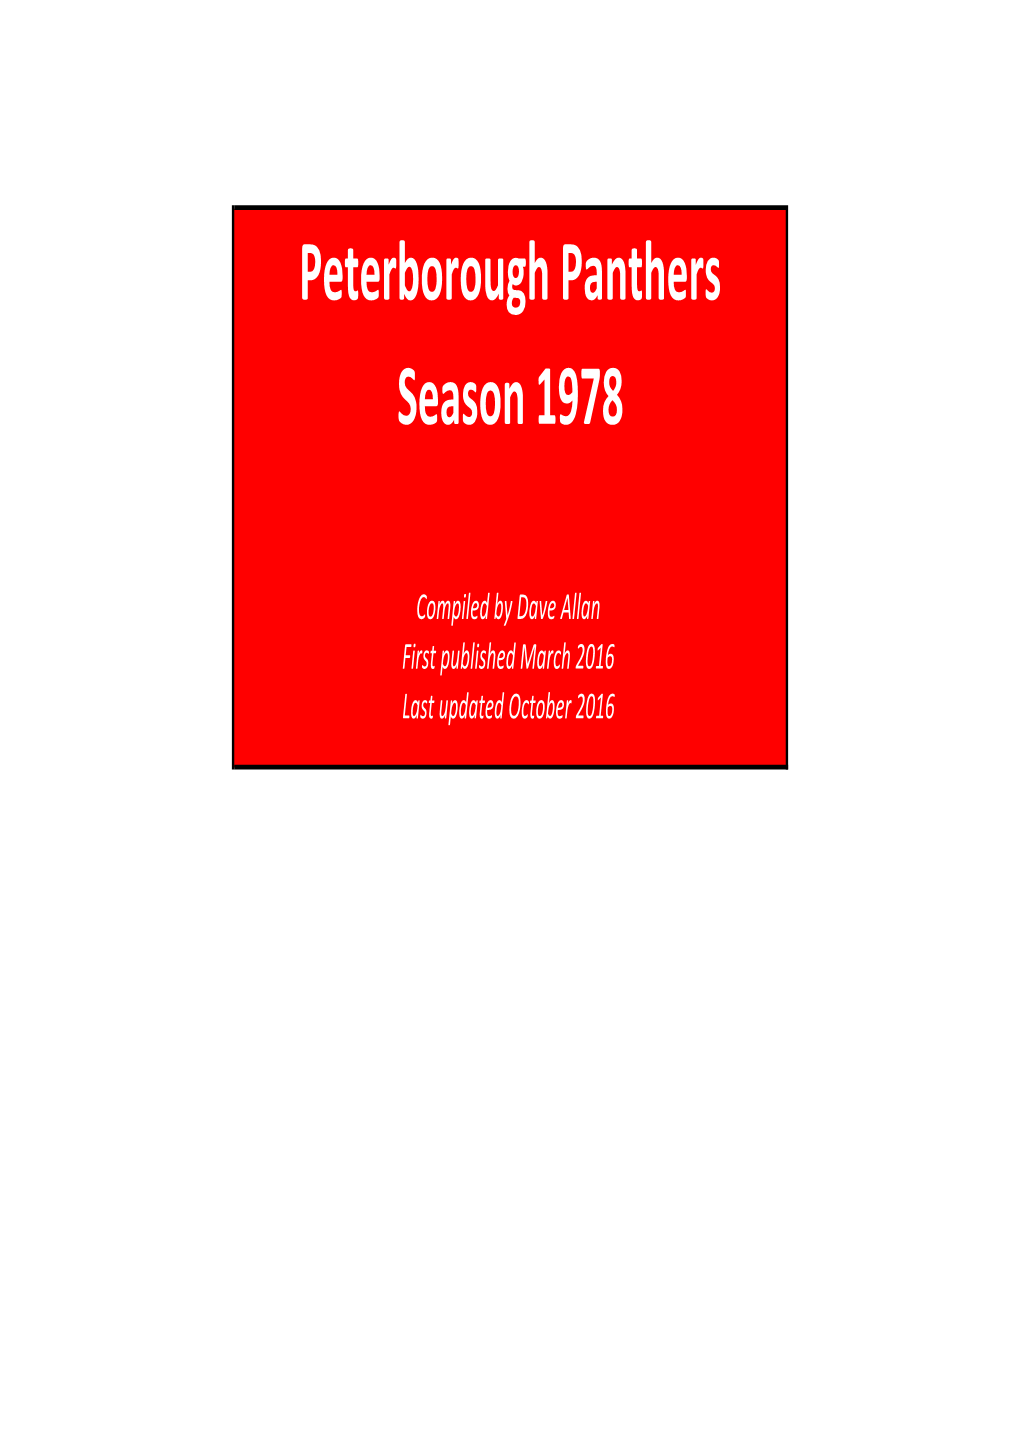 Peterborough Panthers Season 1978